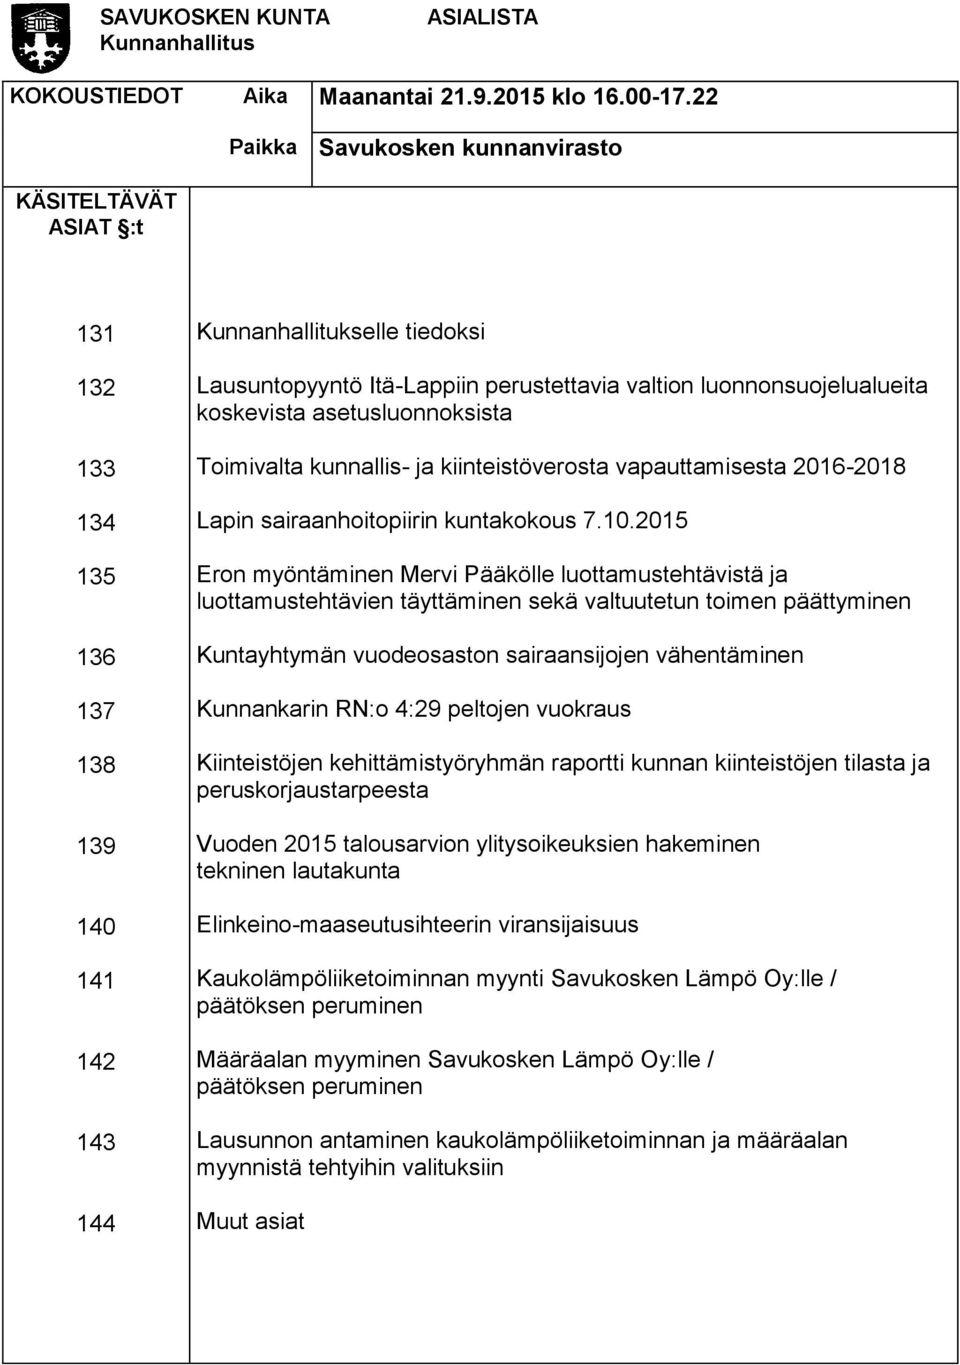 luonnonsuojelualueita koskevista asetusluonnoksista Toimivalta kunnallis- ja kiinteistöverosta vapauttamisesta 2016-2018 Lapin sairaanhoitopiirin kuntakokous 7.10.